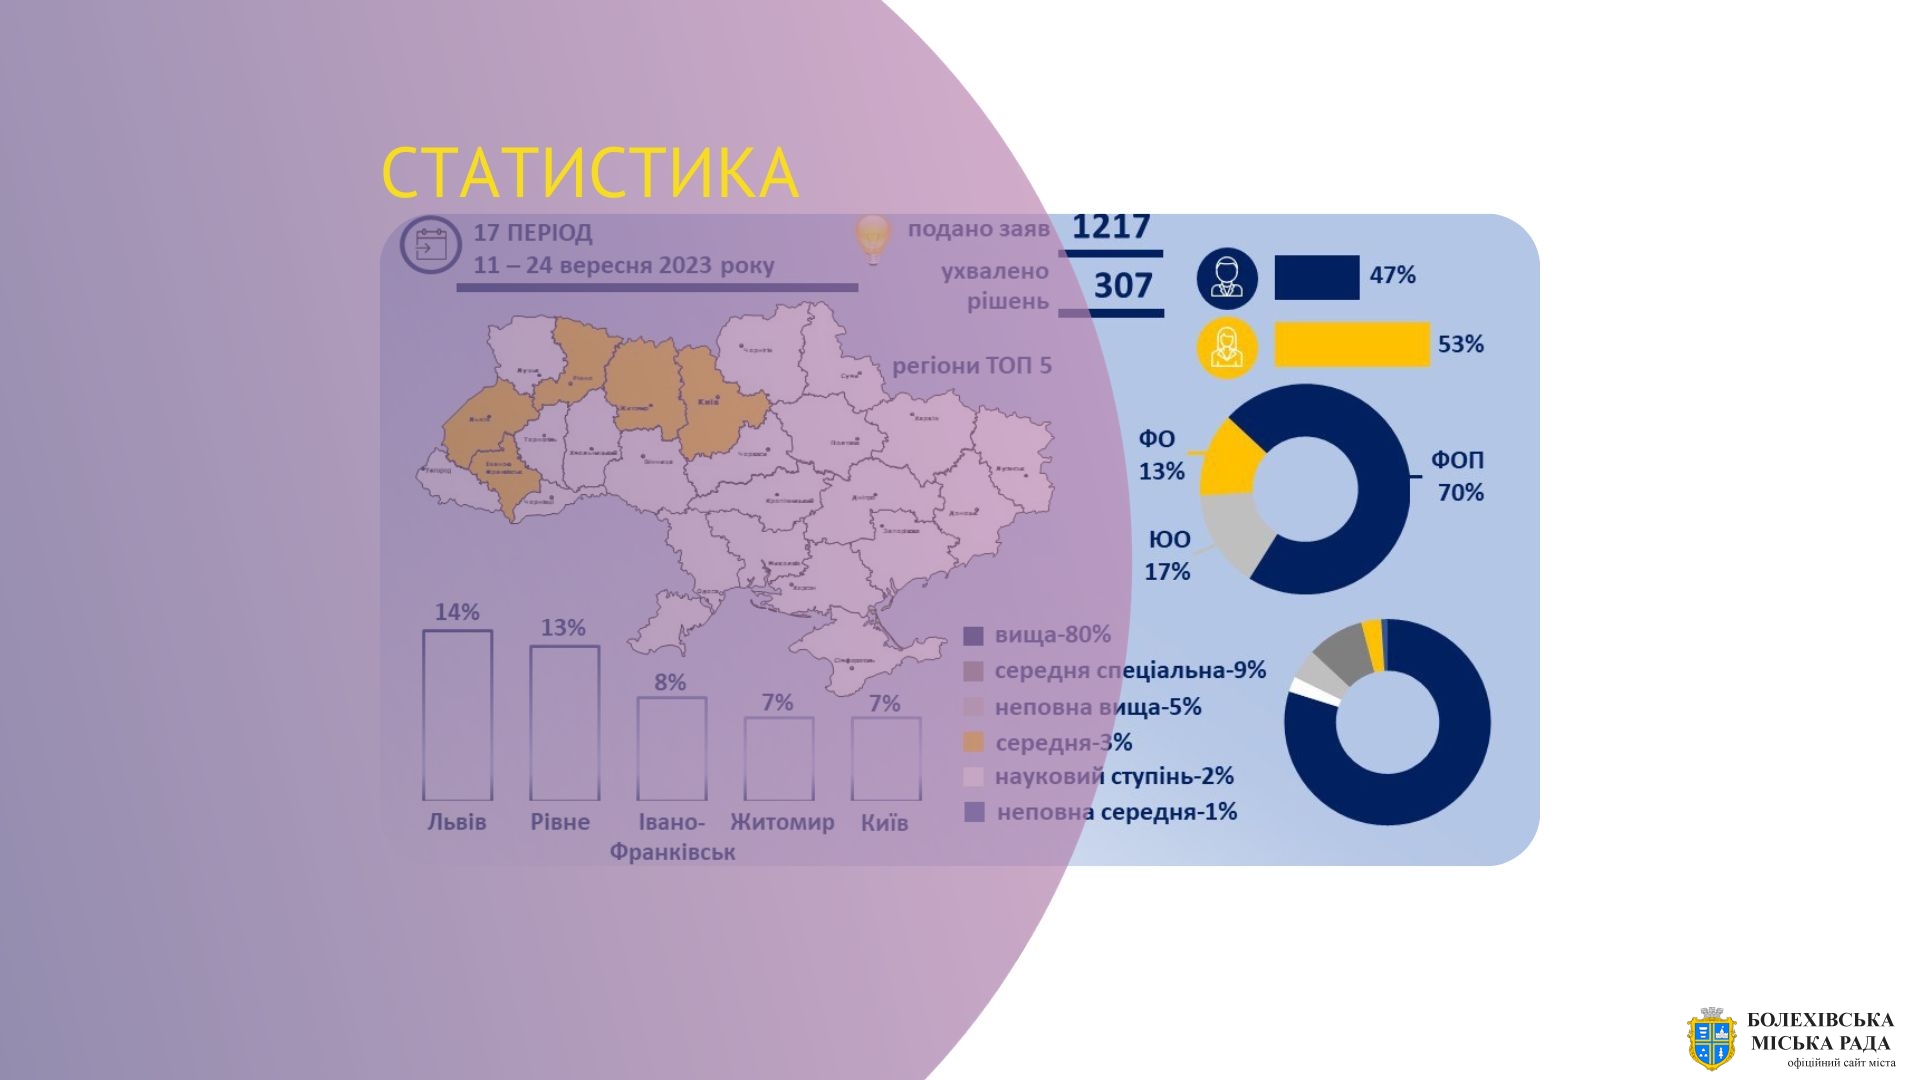 Незмінну трійку лідерства знову посідає Івано-Франківщина серед регіонів з найбільшою кількістю позитивних рішень Державного центру зайнятості щодо надання мікрогрантів